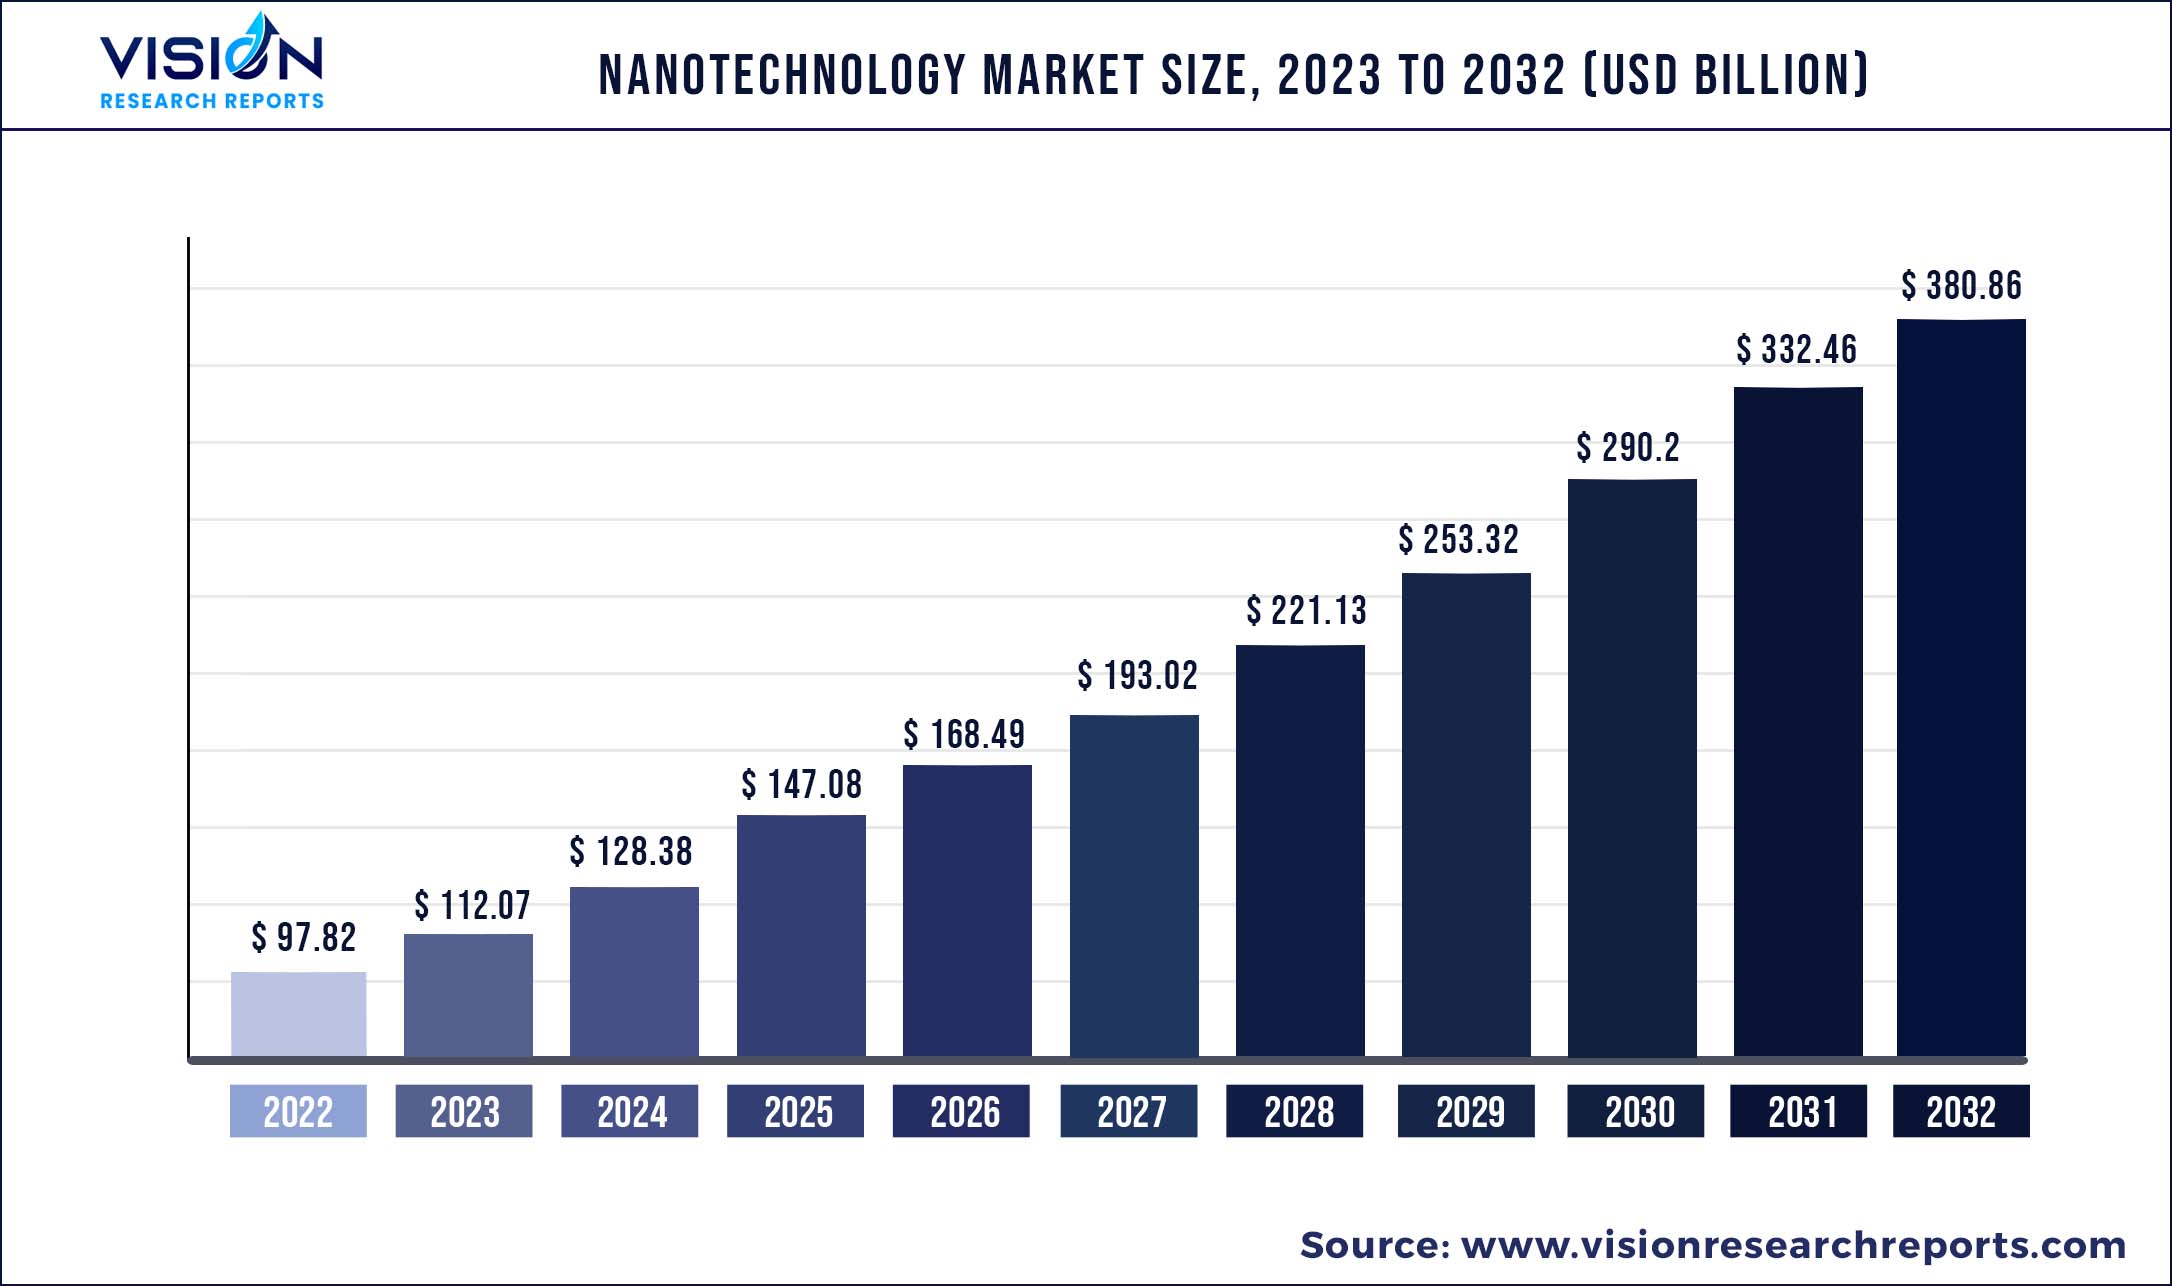 Nanotechnology Market Size 2023 to 2032